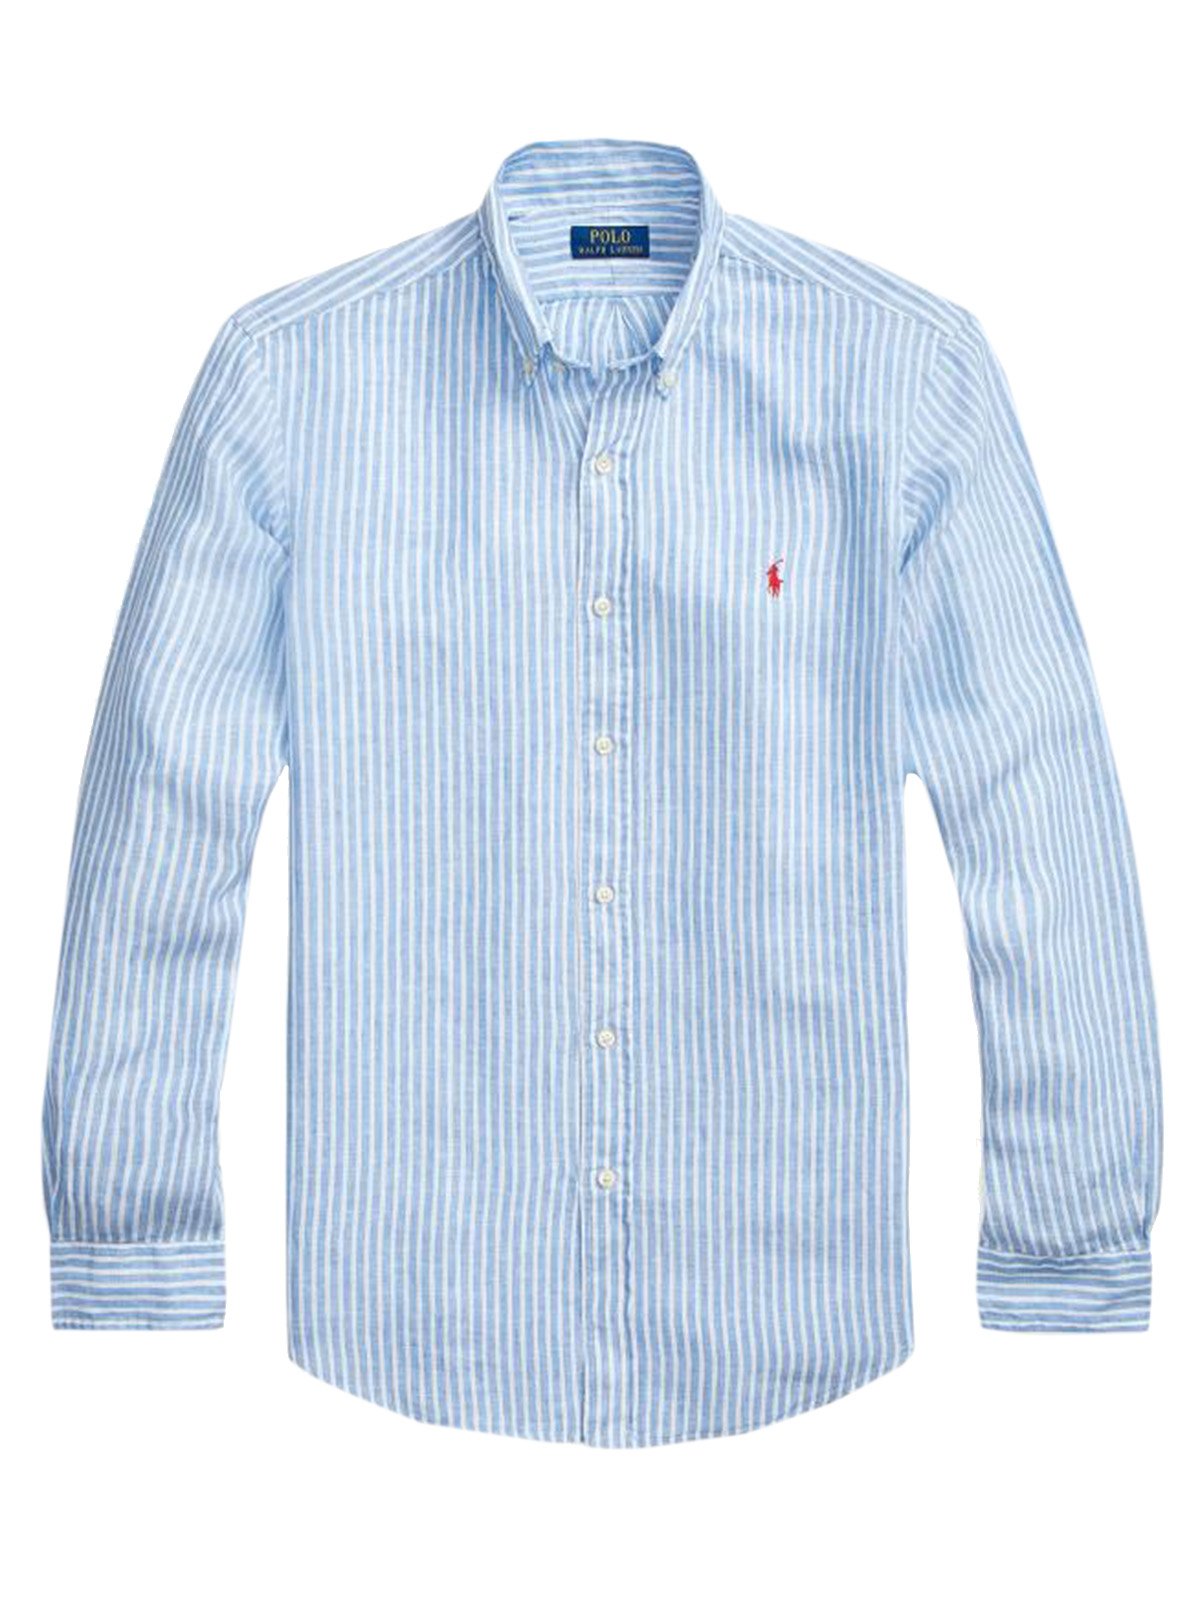 Camicie casual Uomo Ralph Lauren - Camicia In Lino A Righe Custom-Fit - Blu